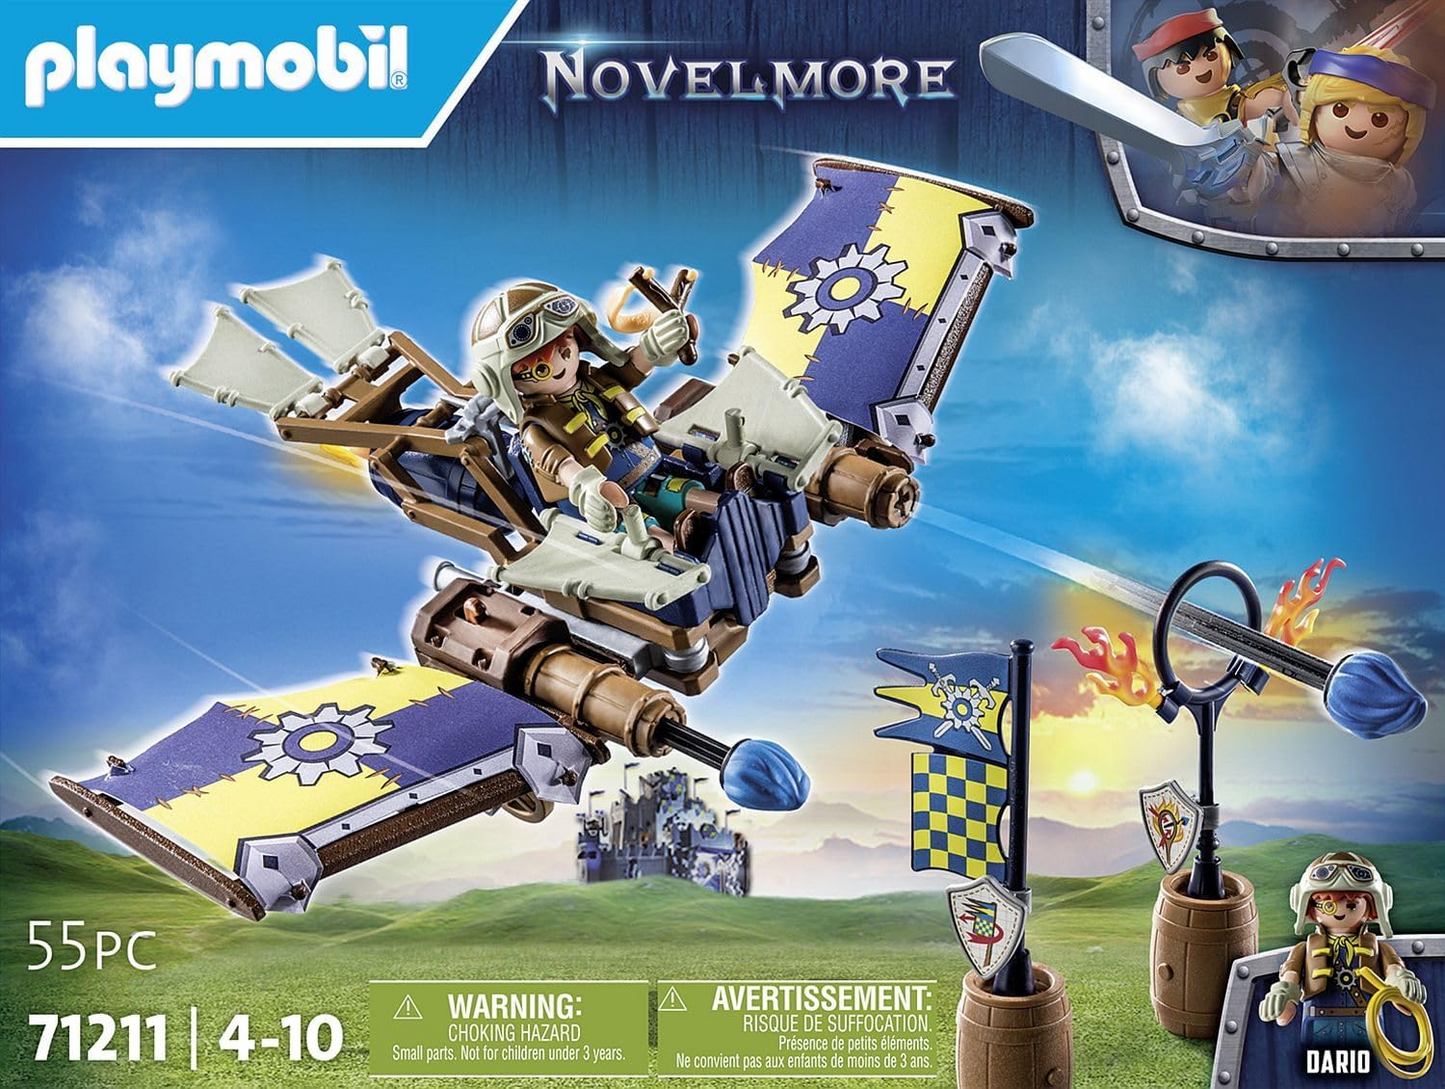 Playmobil 71211 Novelmore - Planador de Dario, planador voador com canhões de ferrolho, castelo medieval e brinquedo de cavaleiros, encenação divertida e imaginativa, conjunto de brinquedos adequado para crianças de 4 anos ou mais